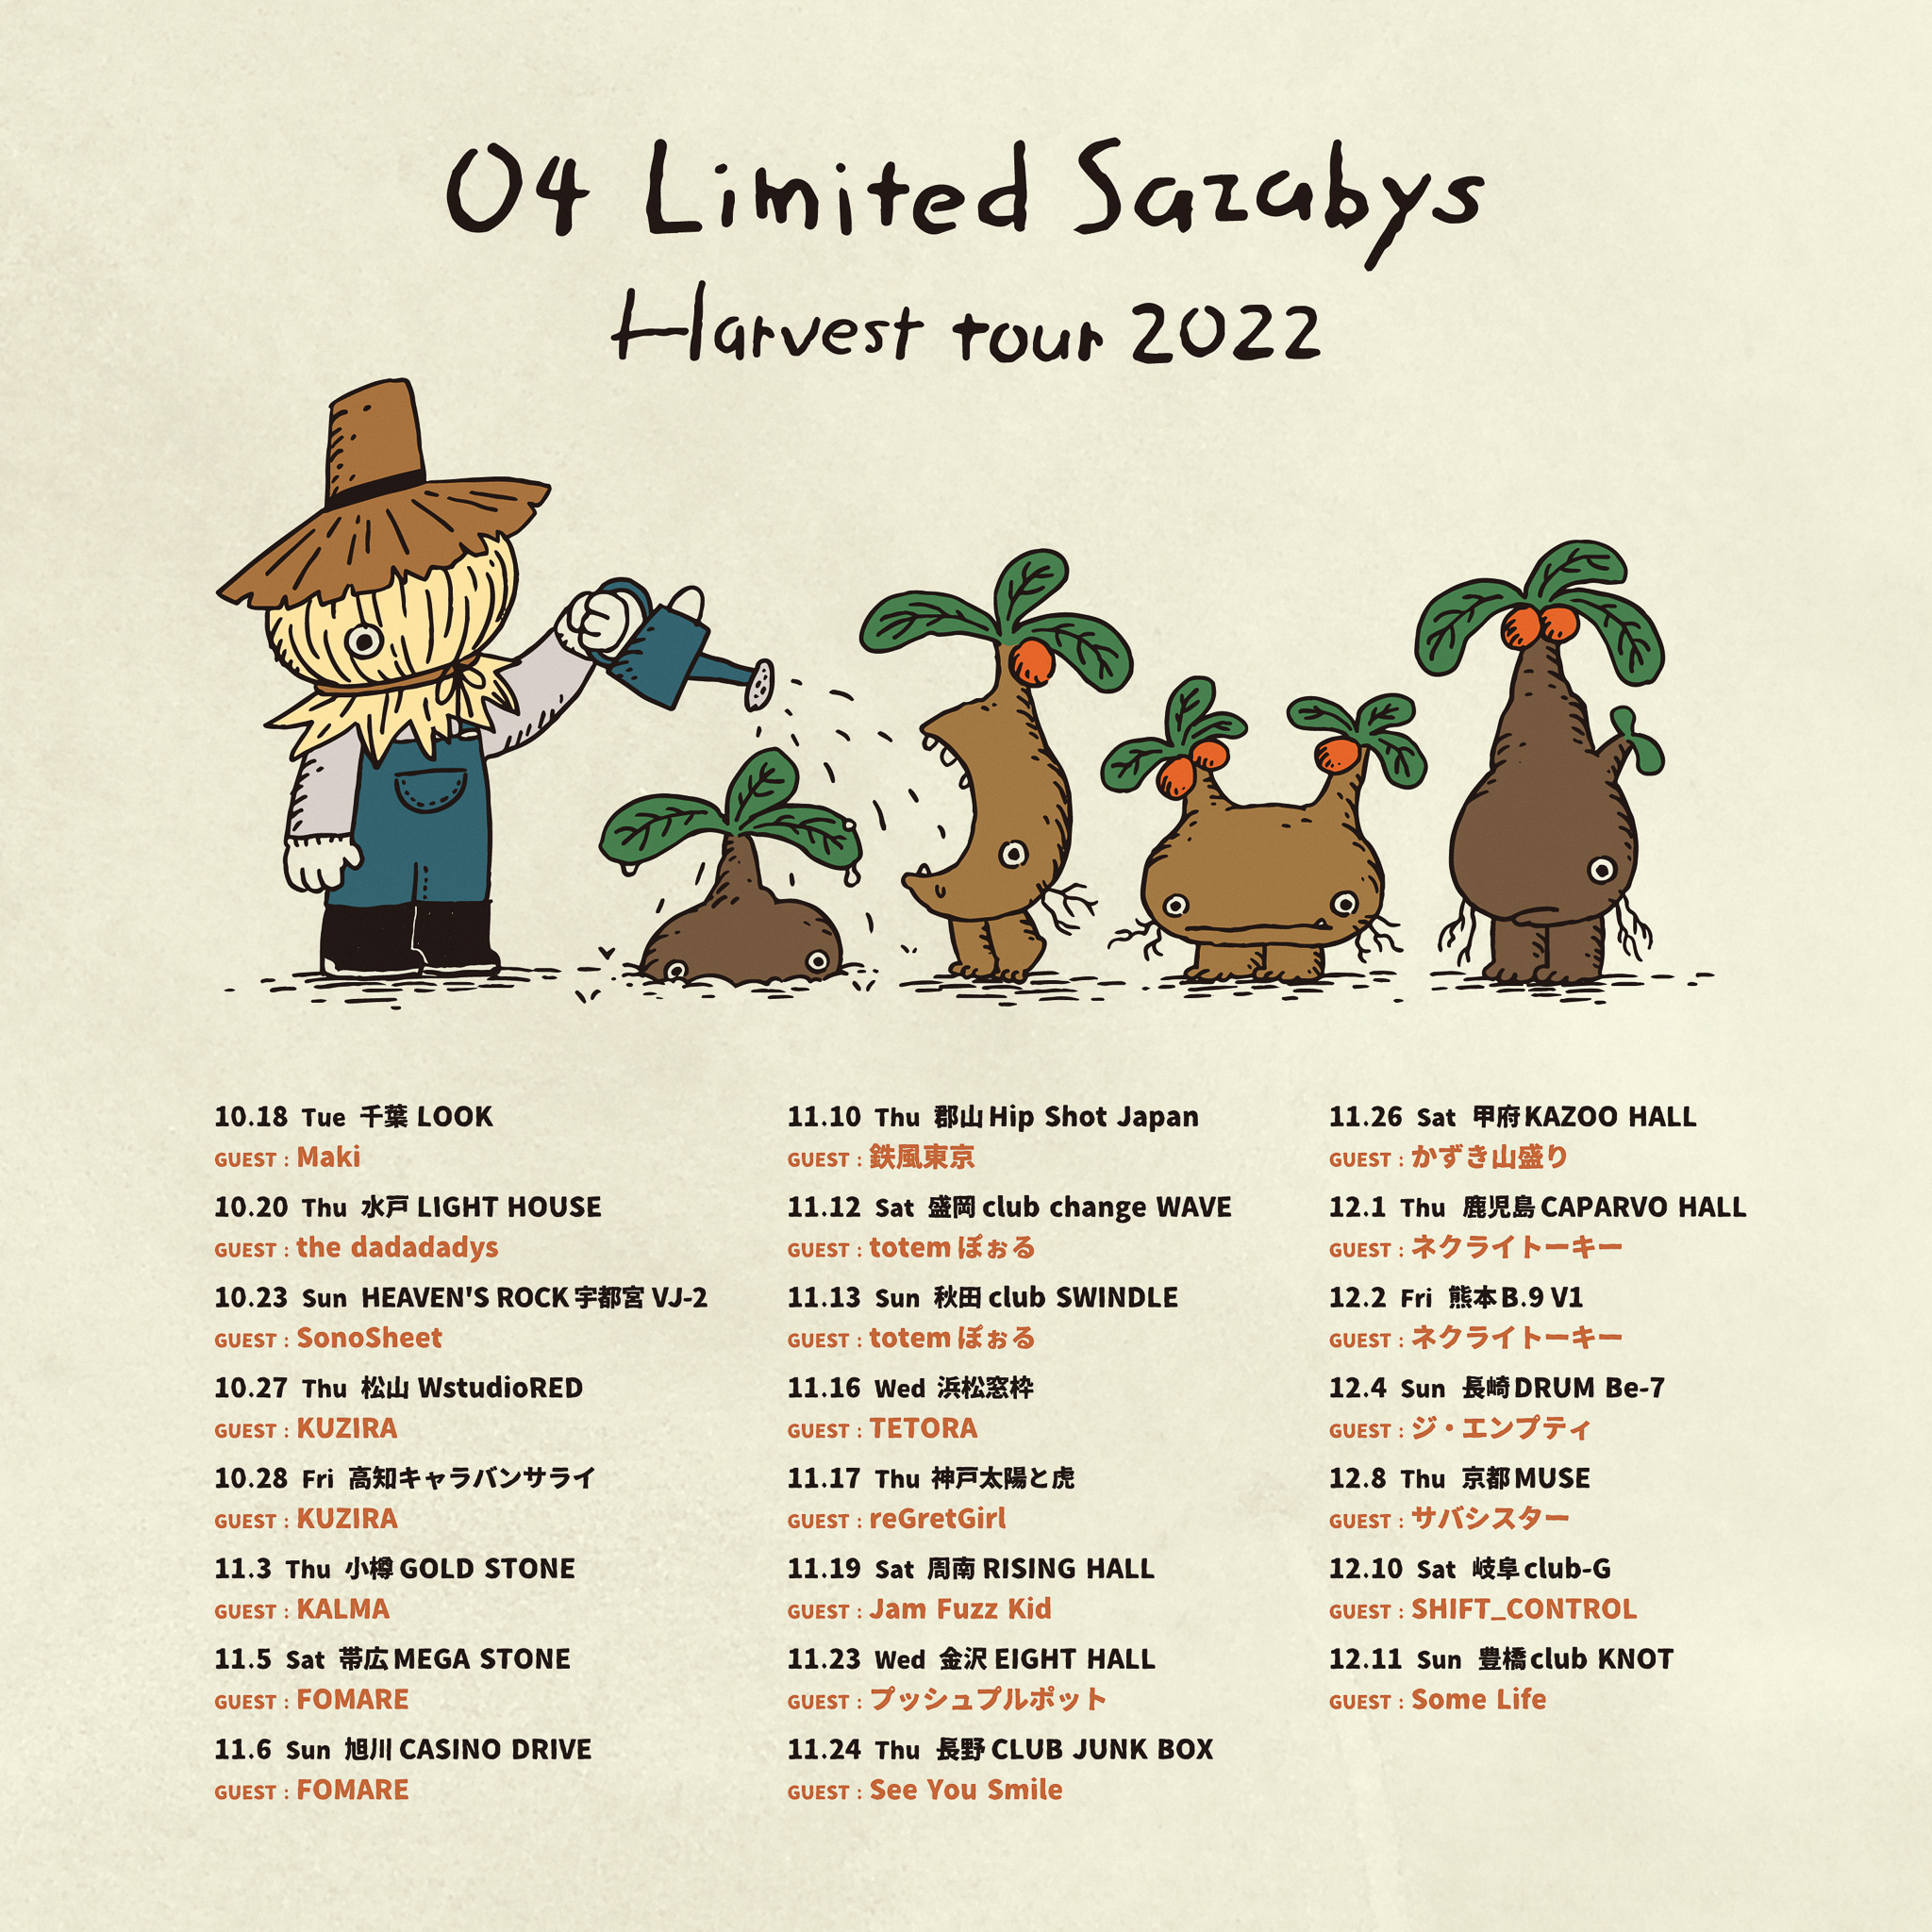 【栃木】04 Limited Sazabys "Harvest tour 2022" (HEAVEN'S ROCK宇都宮 VJ-2)